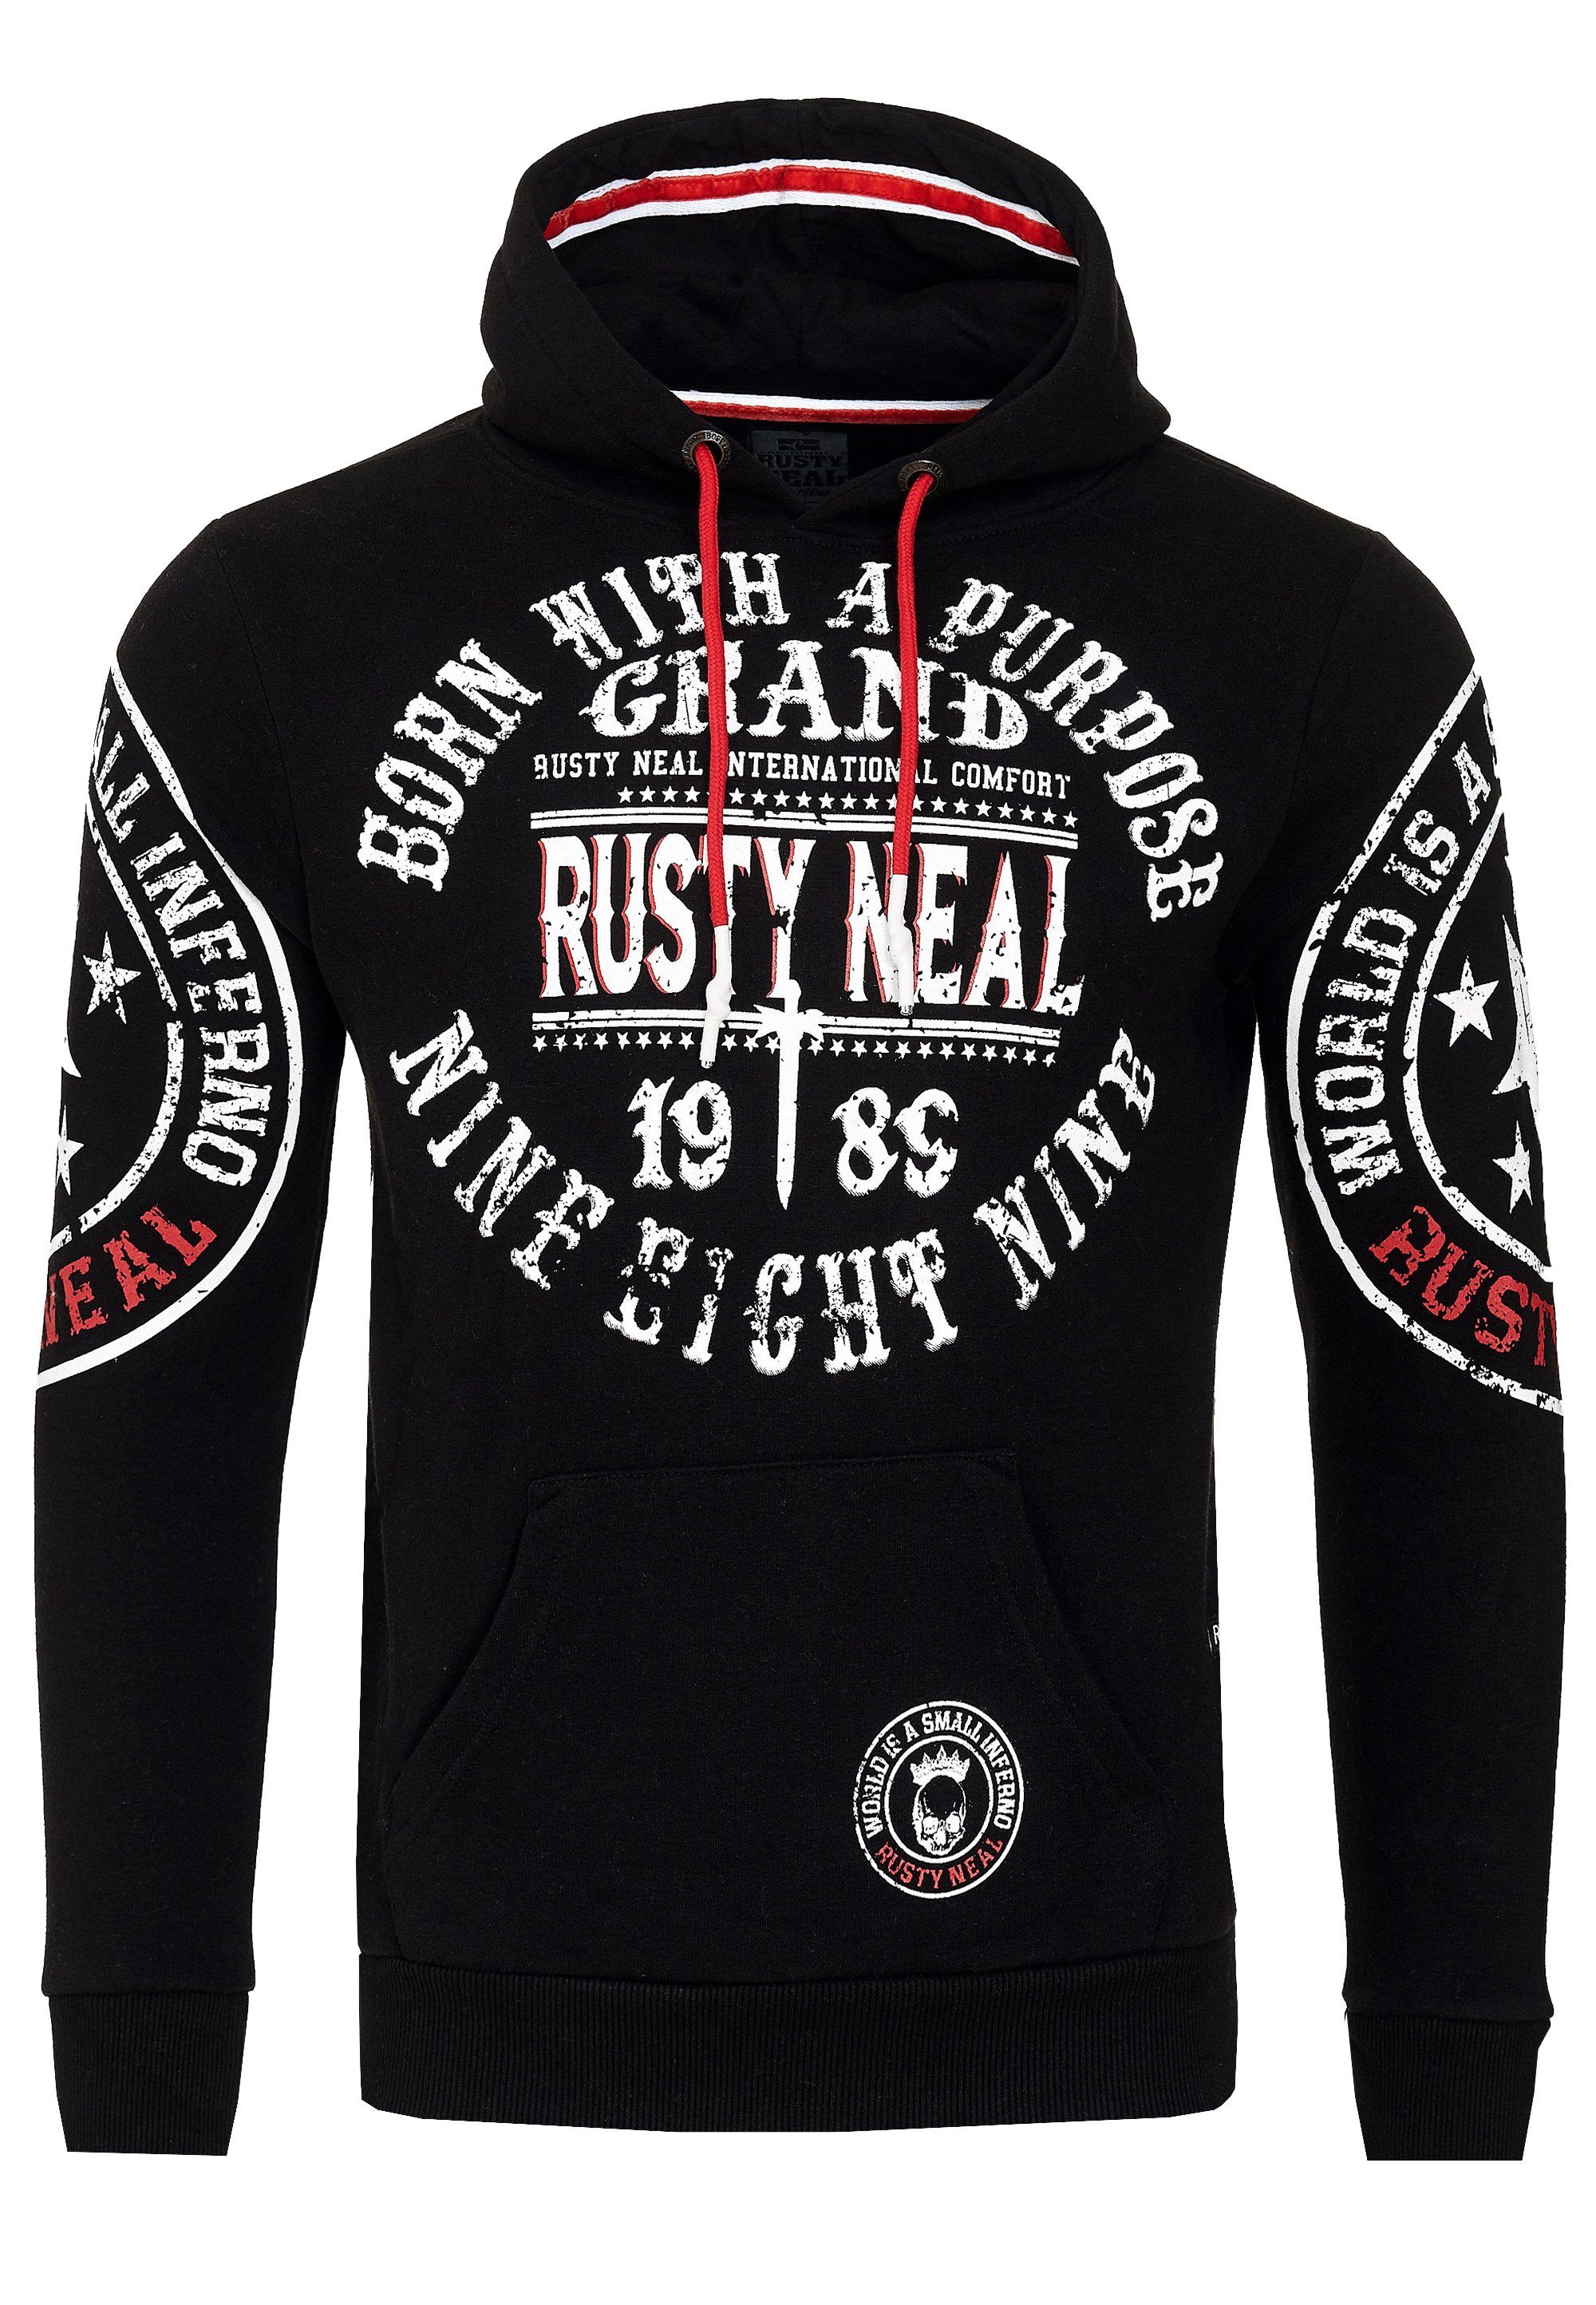 Rusty Neal mit Markenprints Kapuzensweatshirt coolen schwarz-weiß